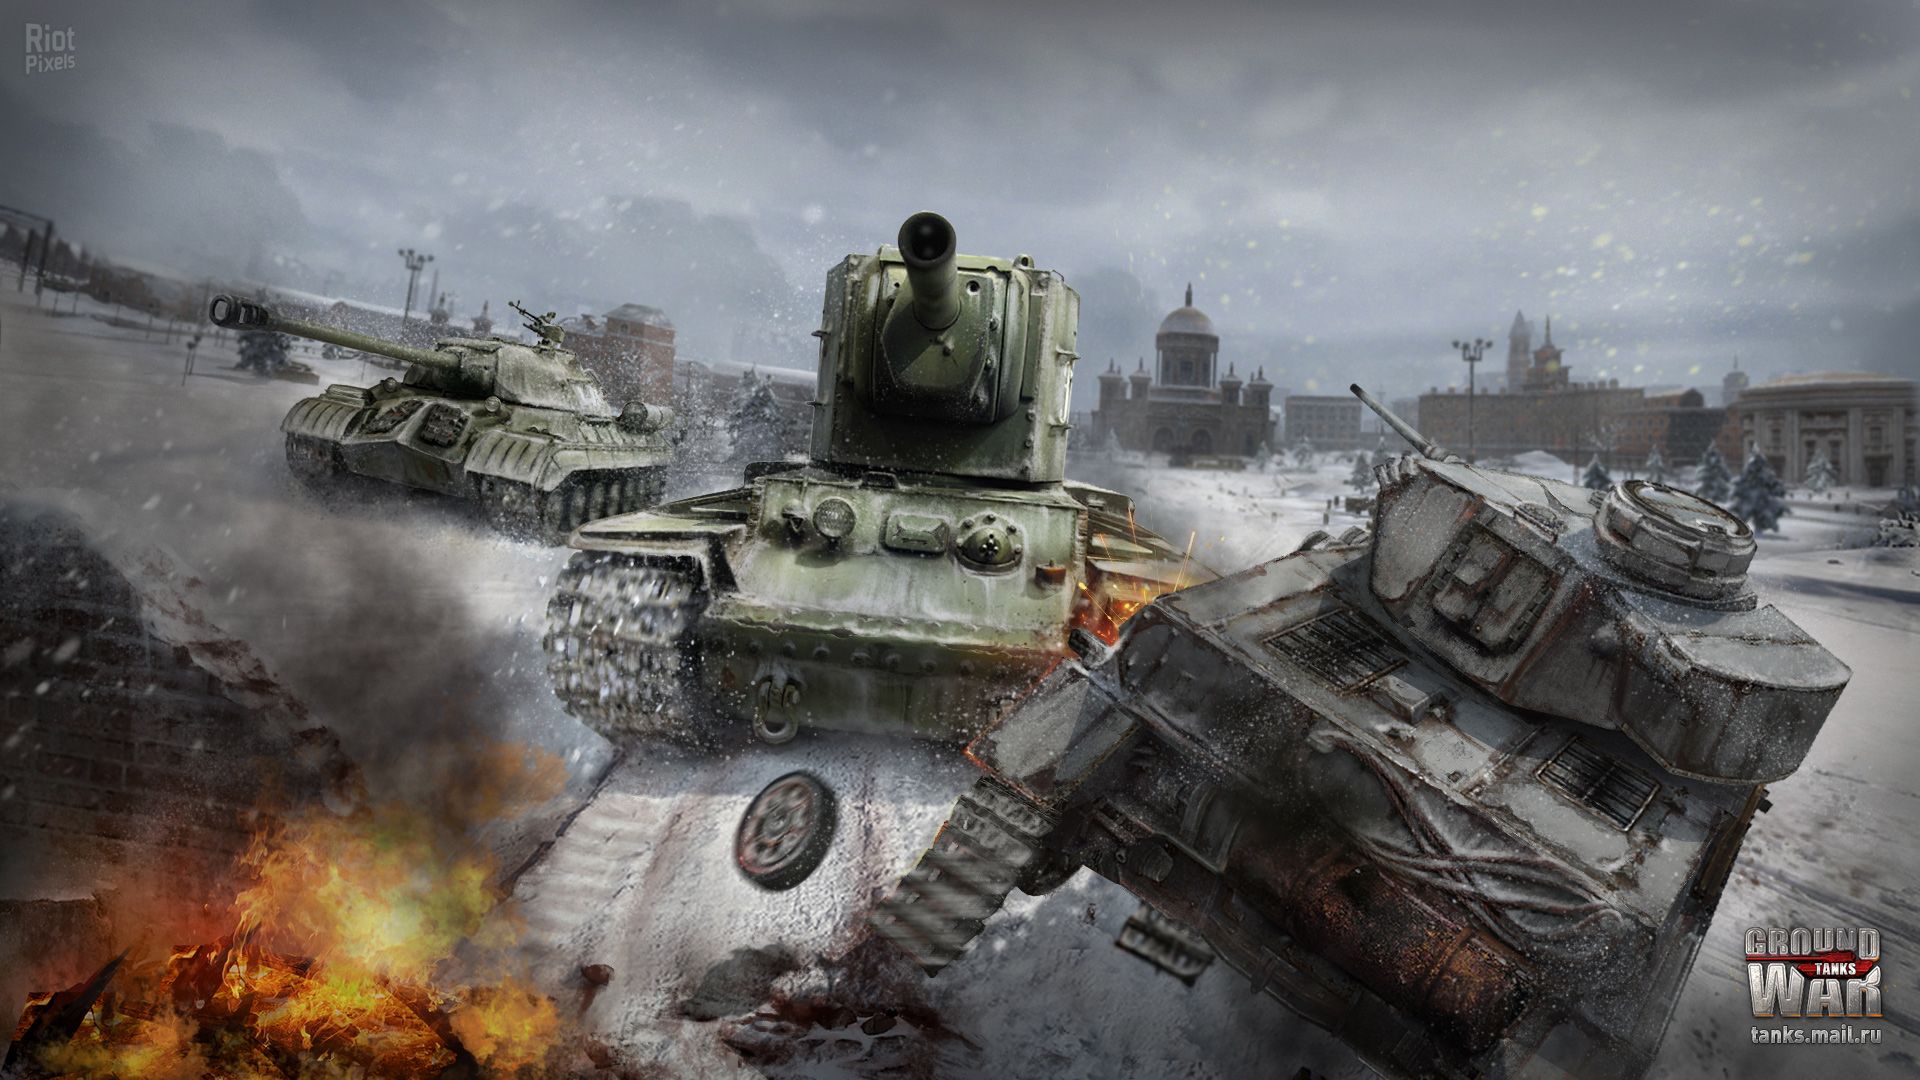 Ground War: Tanks wallpaper at Riot Pixels, image